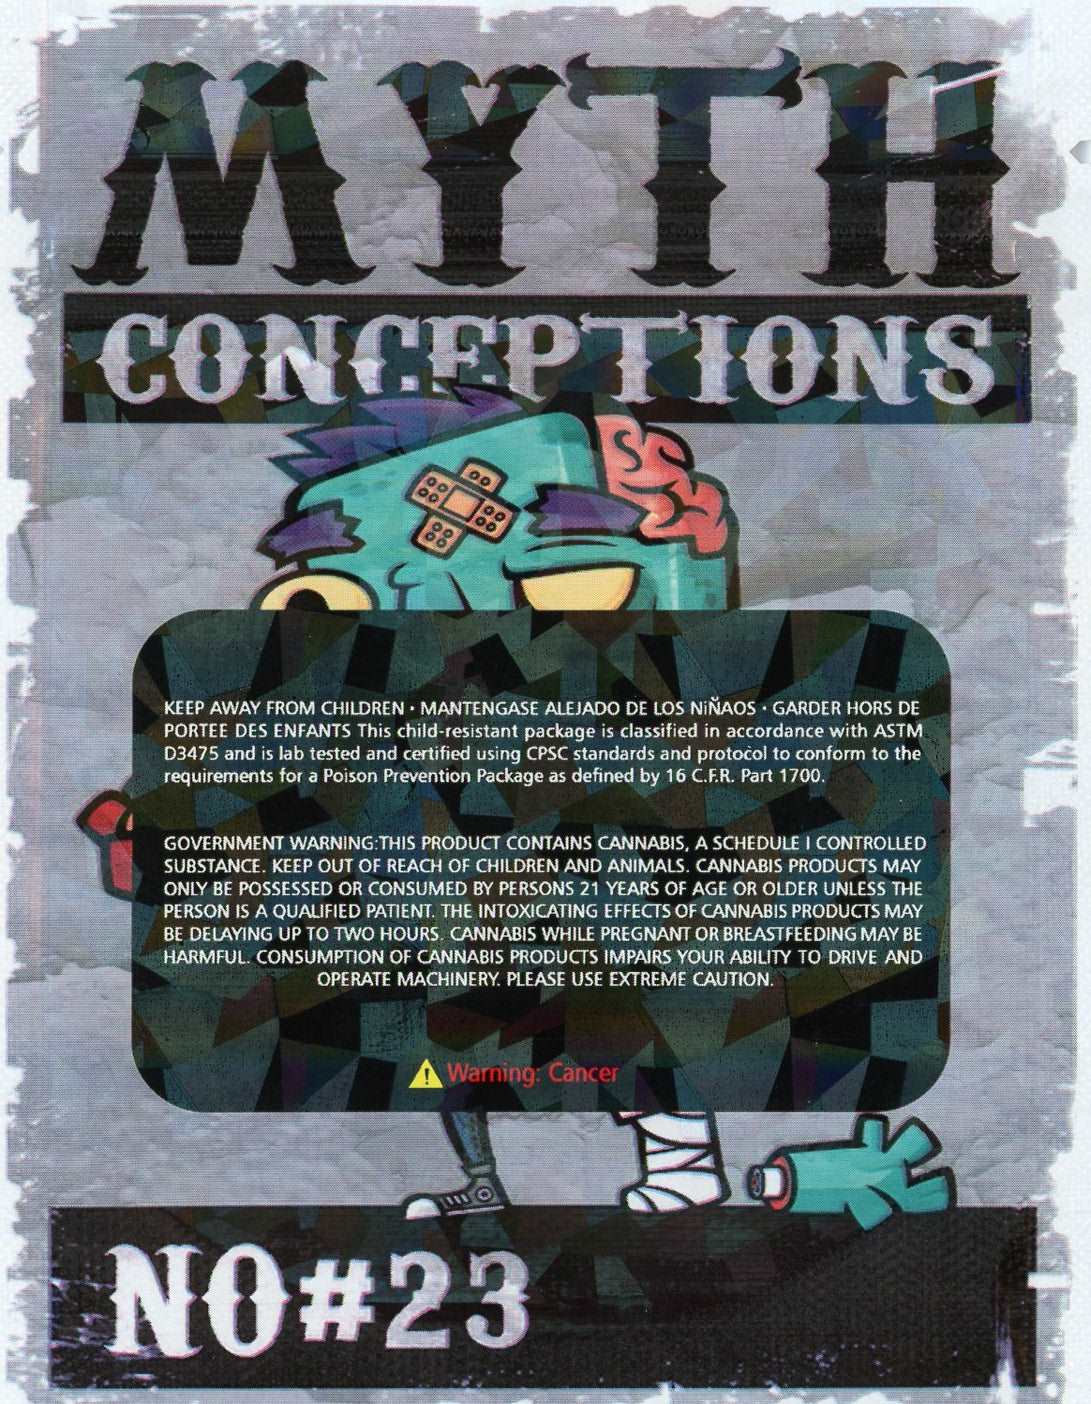 Bag Boyz Mylar Bags 3.5g - Myth Conceptions Gelato